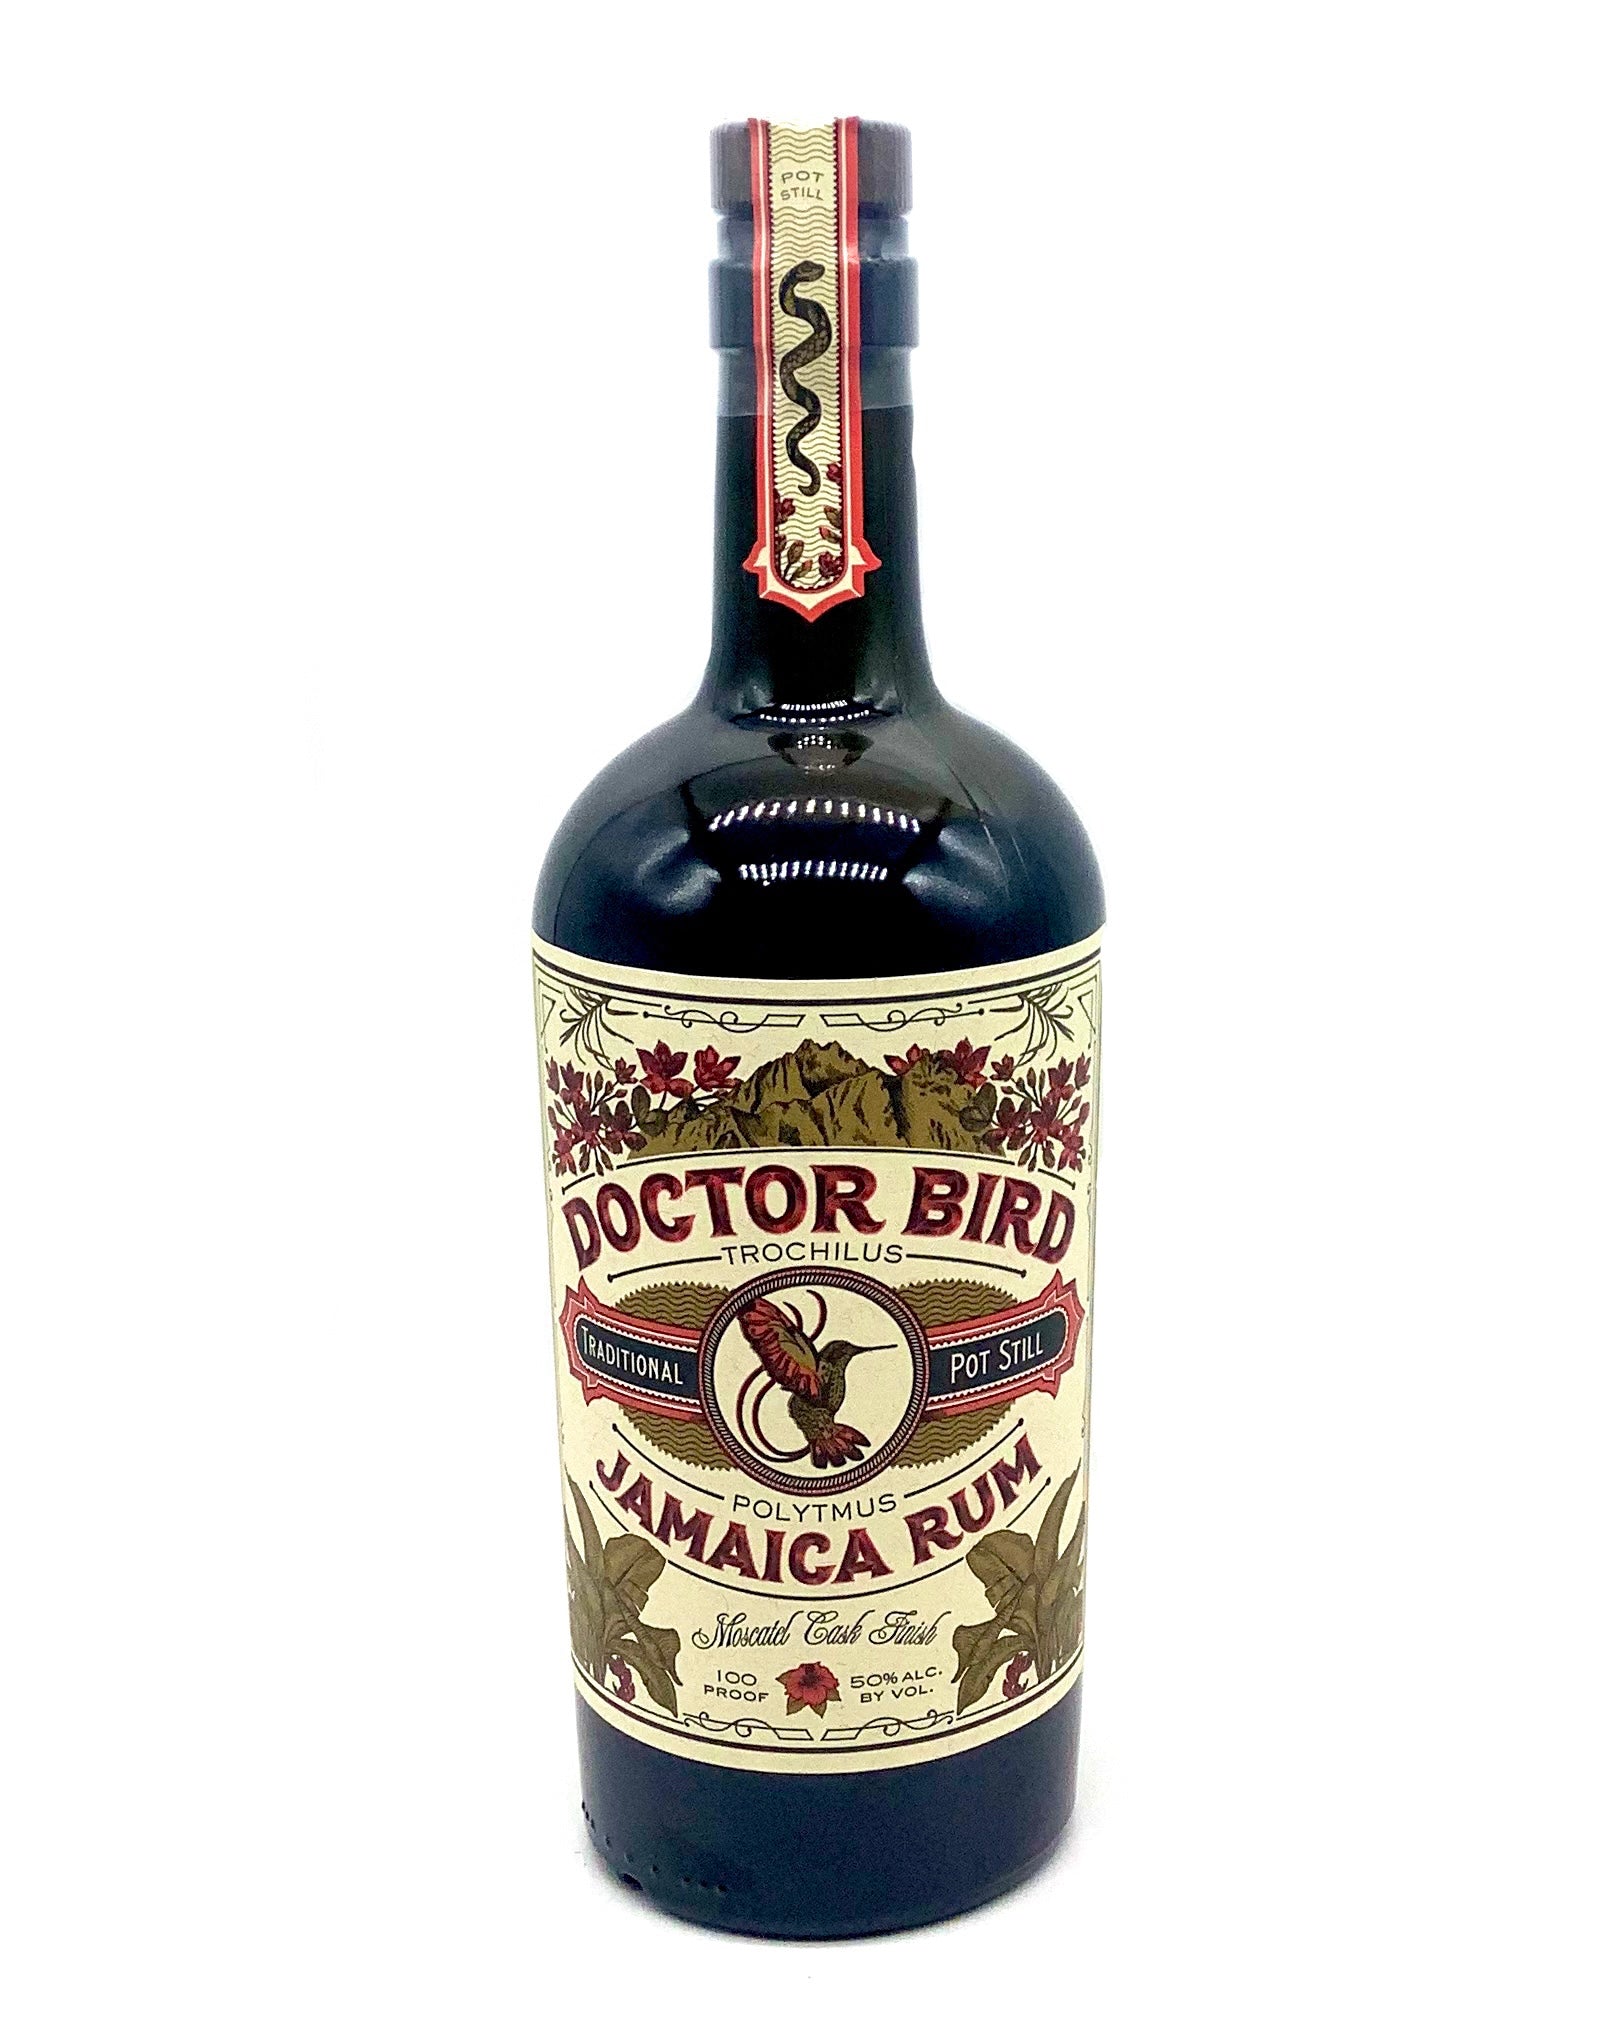 Doctor Bird Jamaica Rum 100 proof